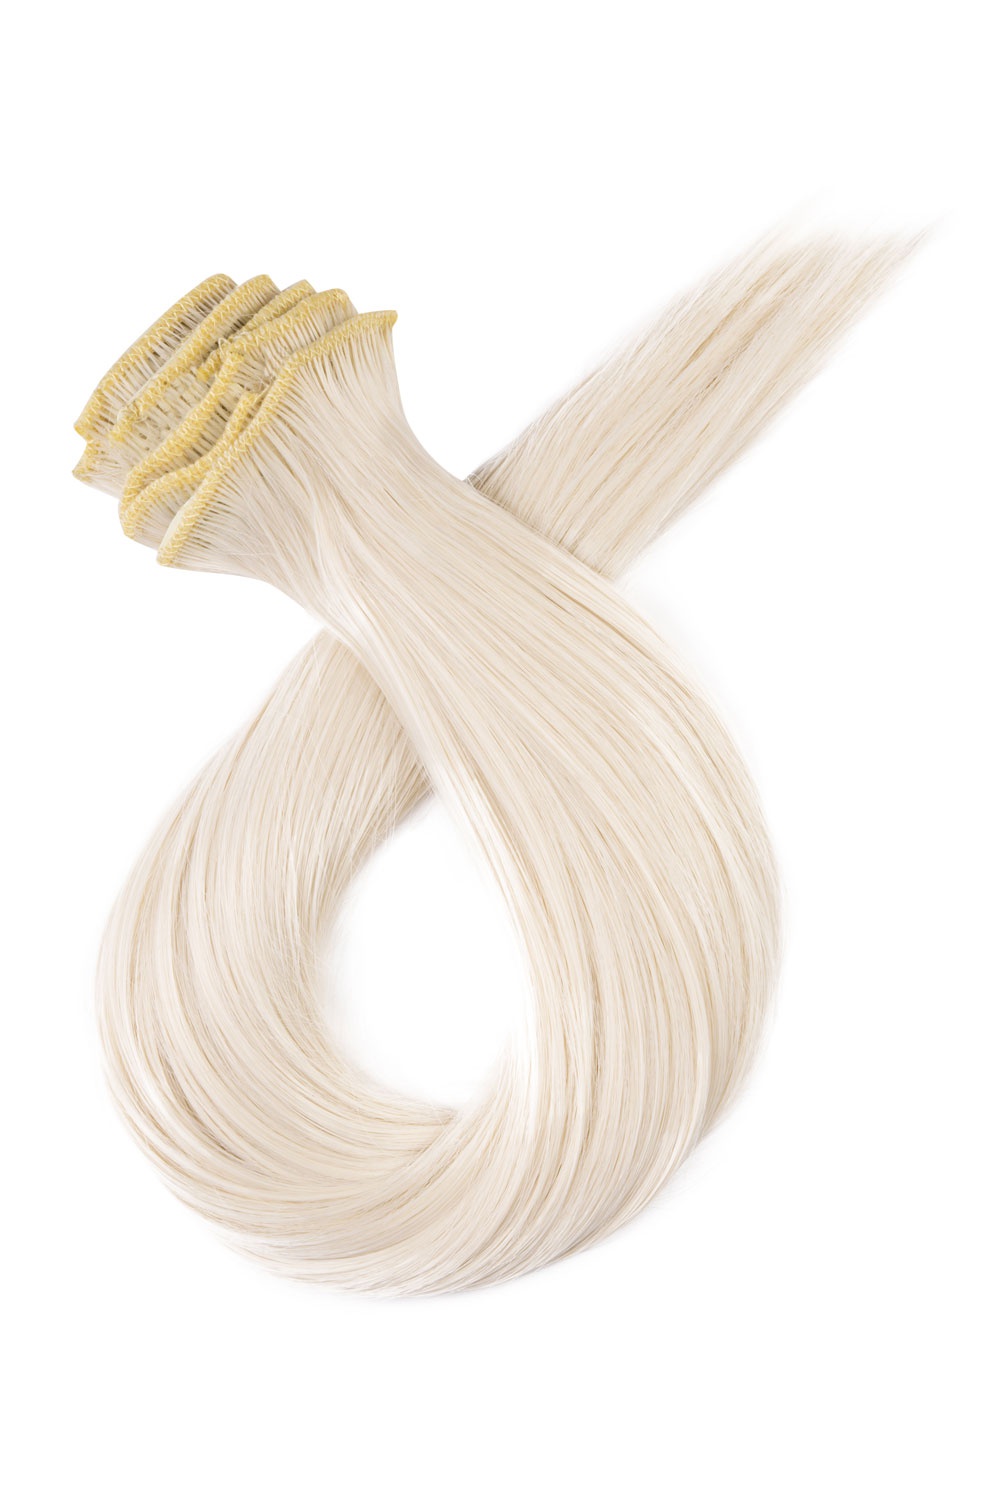 Platinové blond clip in vlasy, 50cm, 115g, farba 60